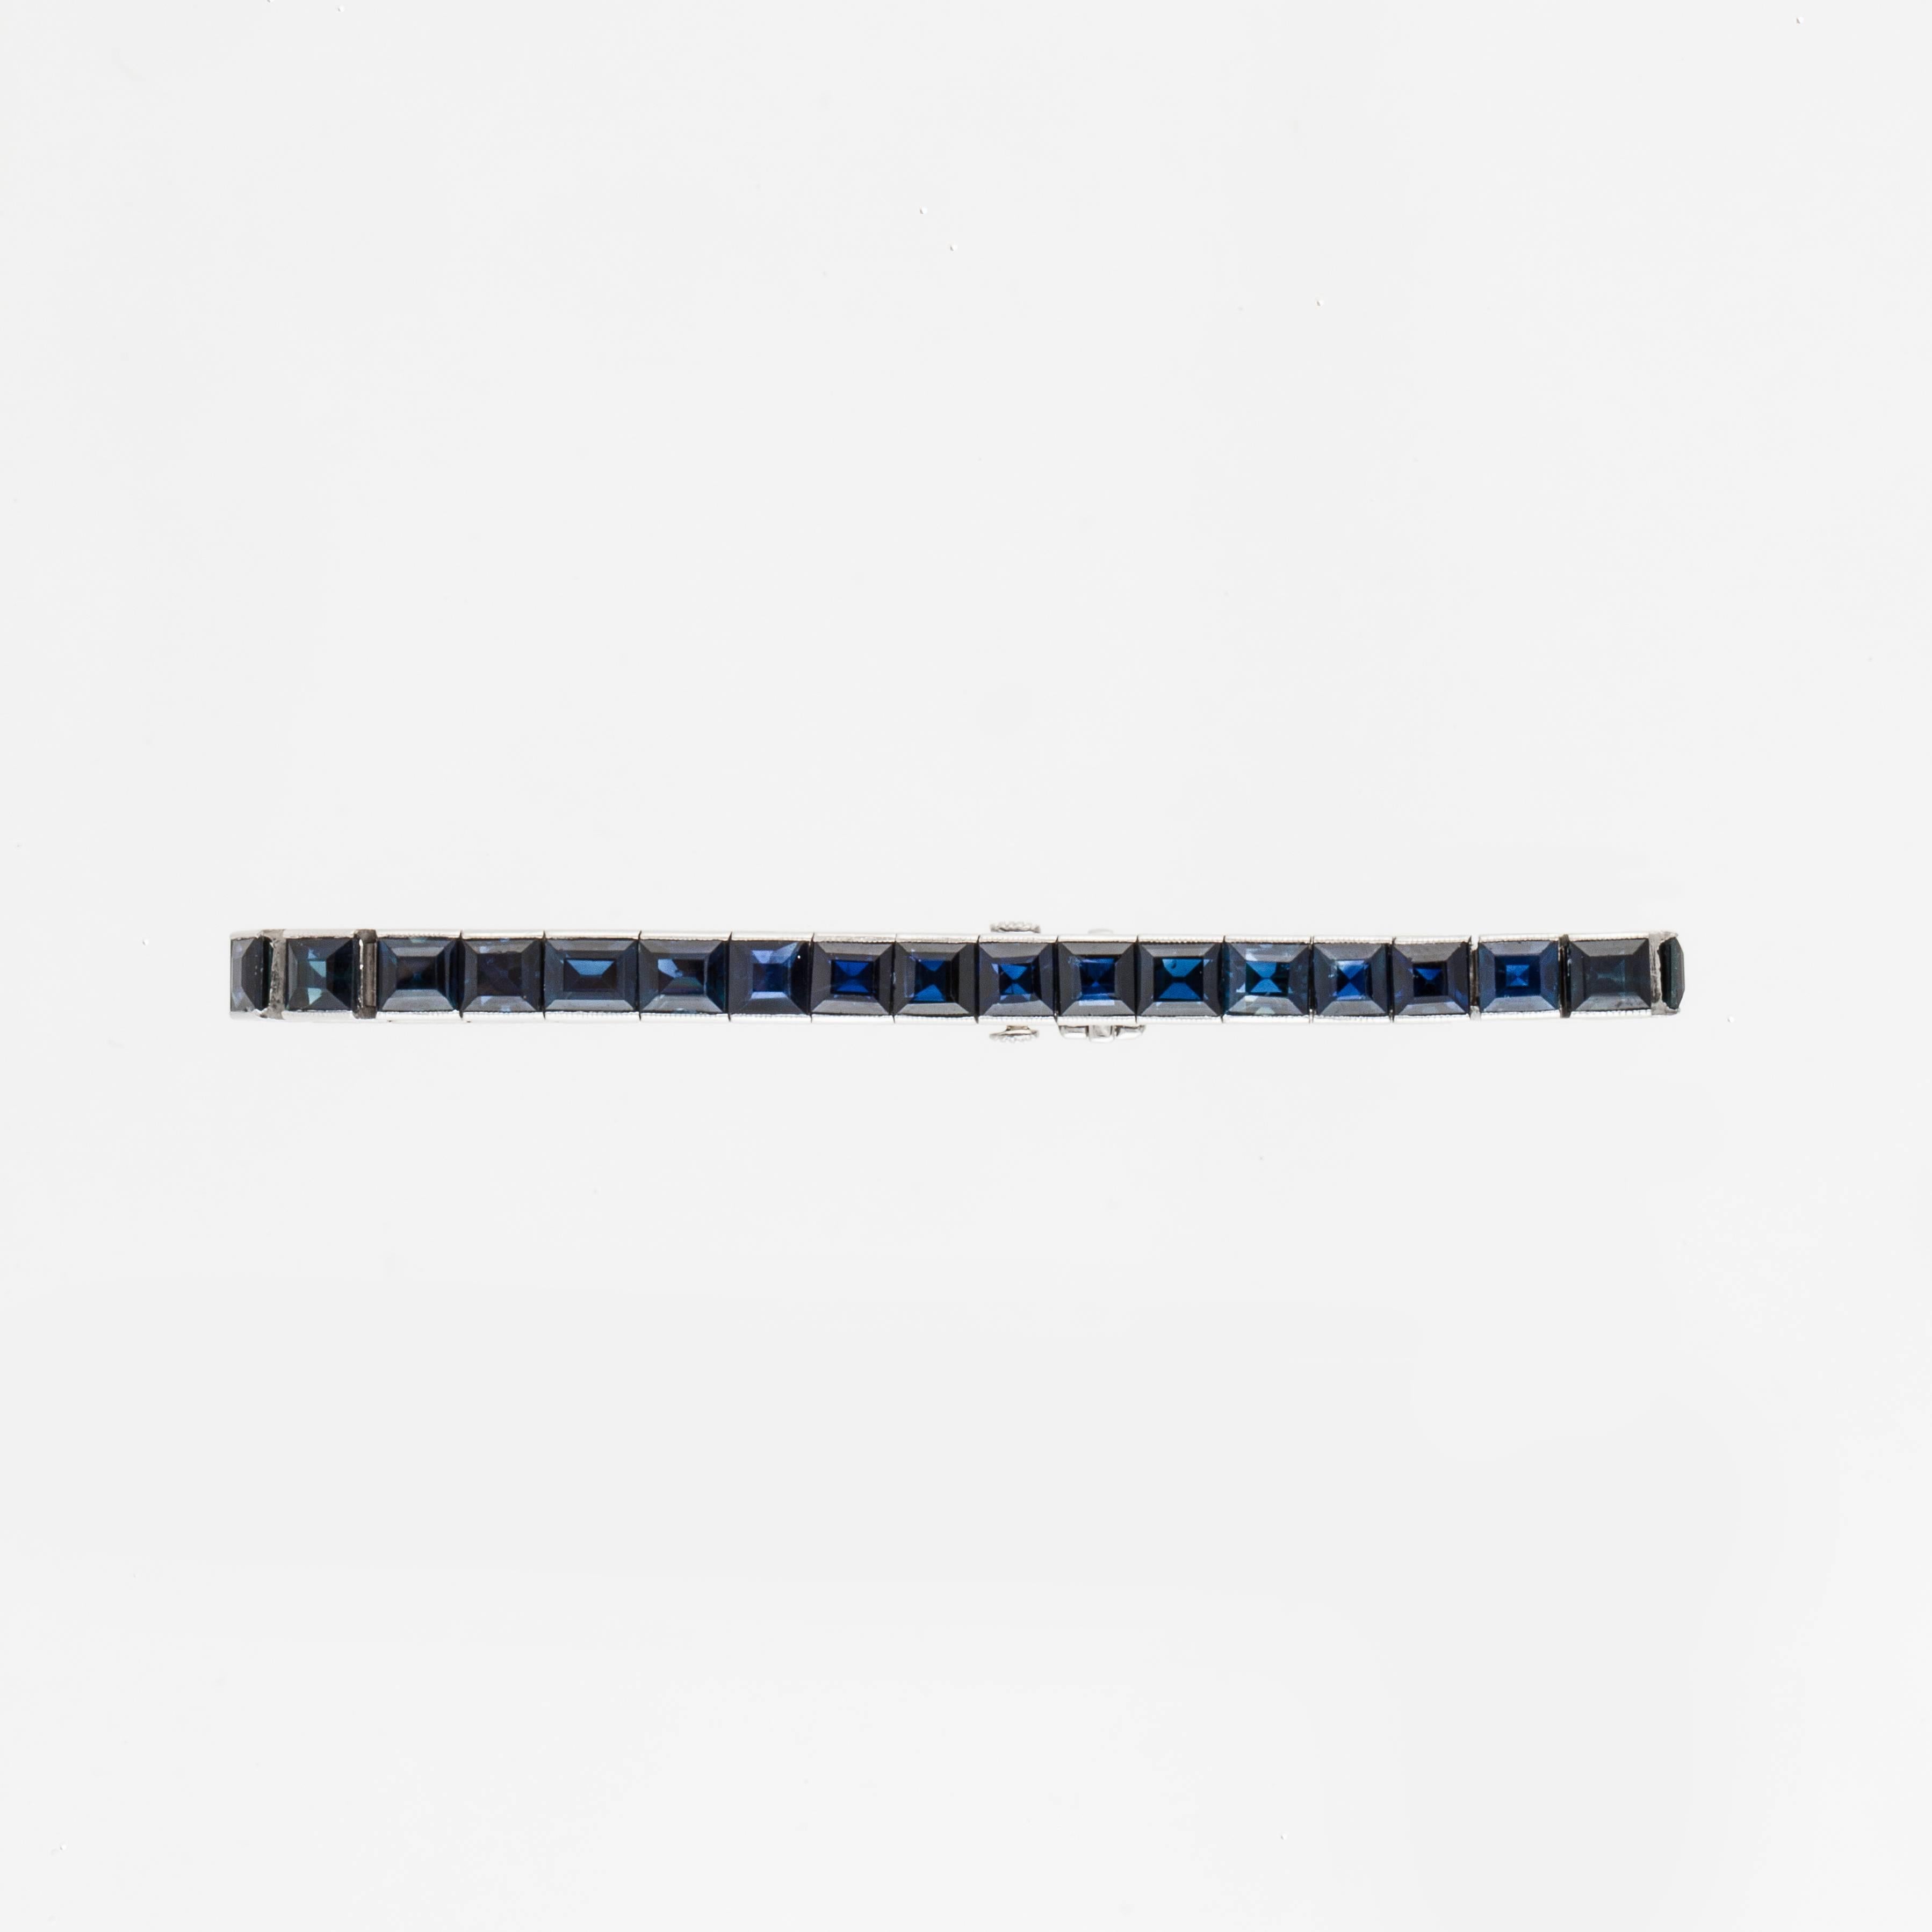 Black Starr & Frost Platinarmband mit sechsunddreißig (36) Saphiren im Quadratschliff von insgesamt 27 Karat.  An den Außenkanten ist eine schöne Gravur angebracht.  Armband hat eine Zunge Verschluss mit Sicherheit und misst 6,5 Zoll in der Länge